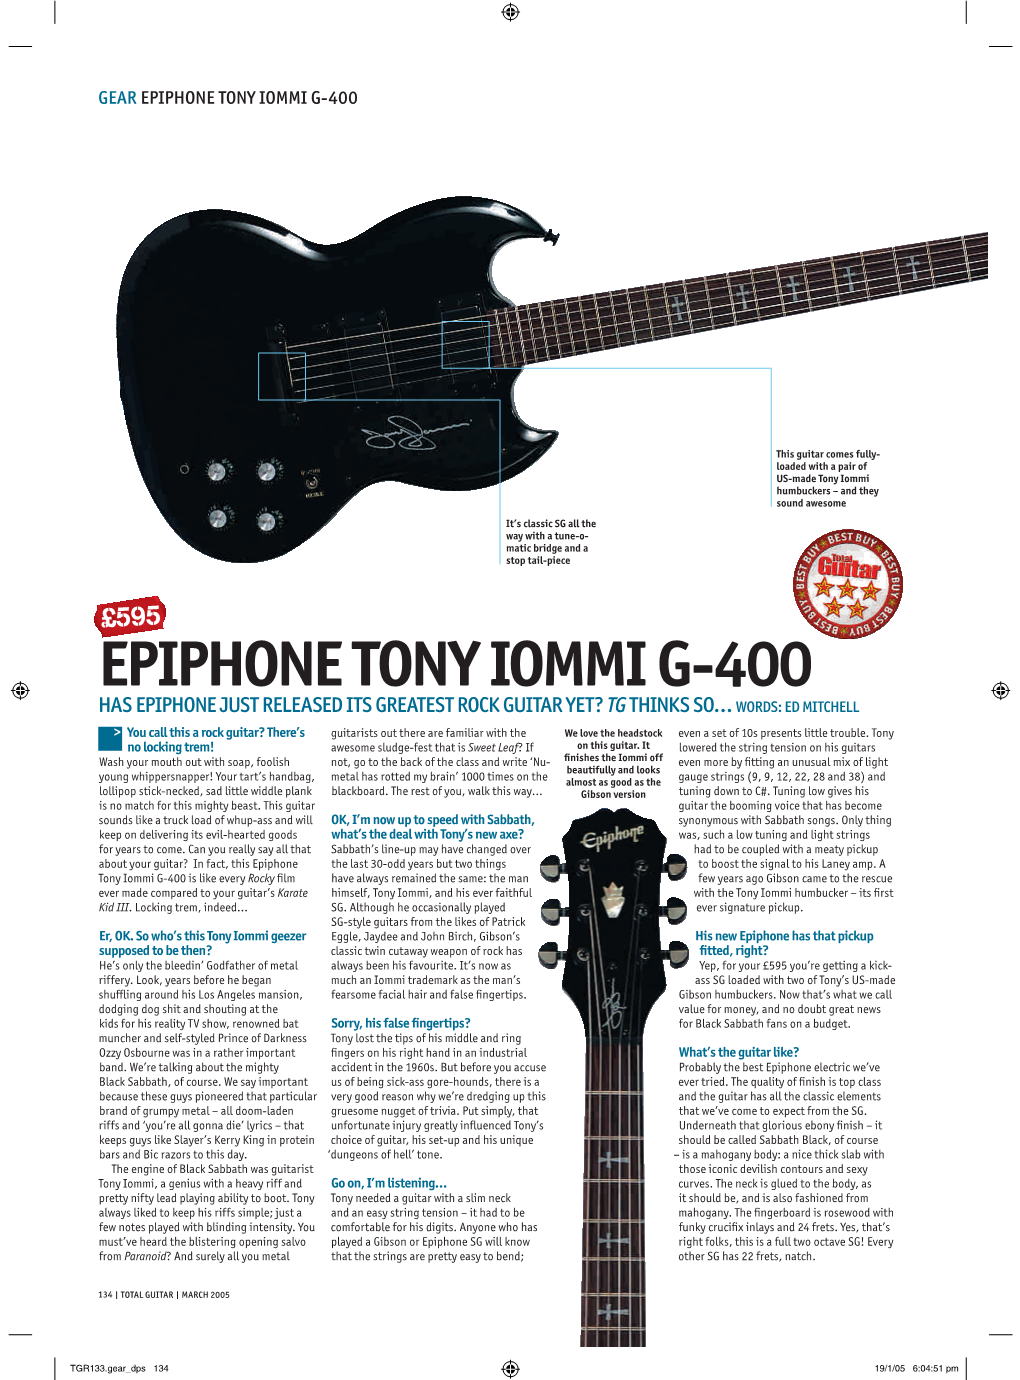 Epiphone Tony Iommi G-400